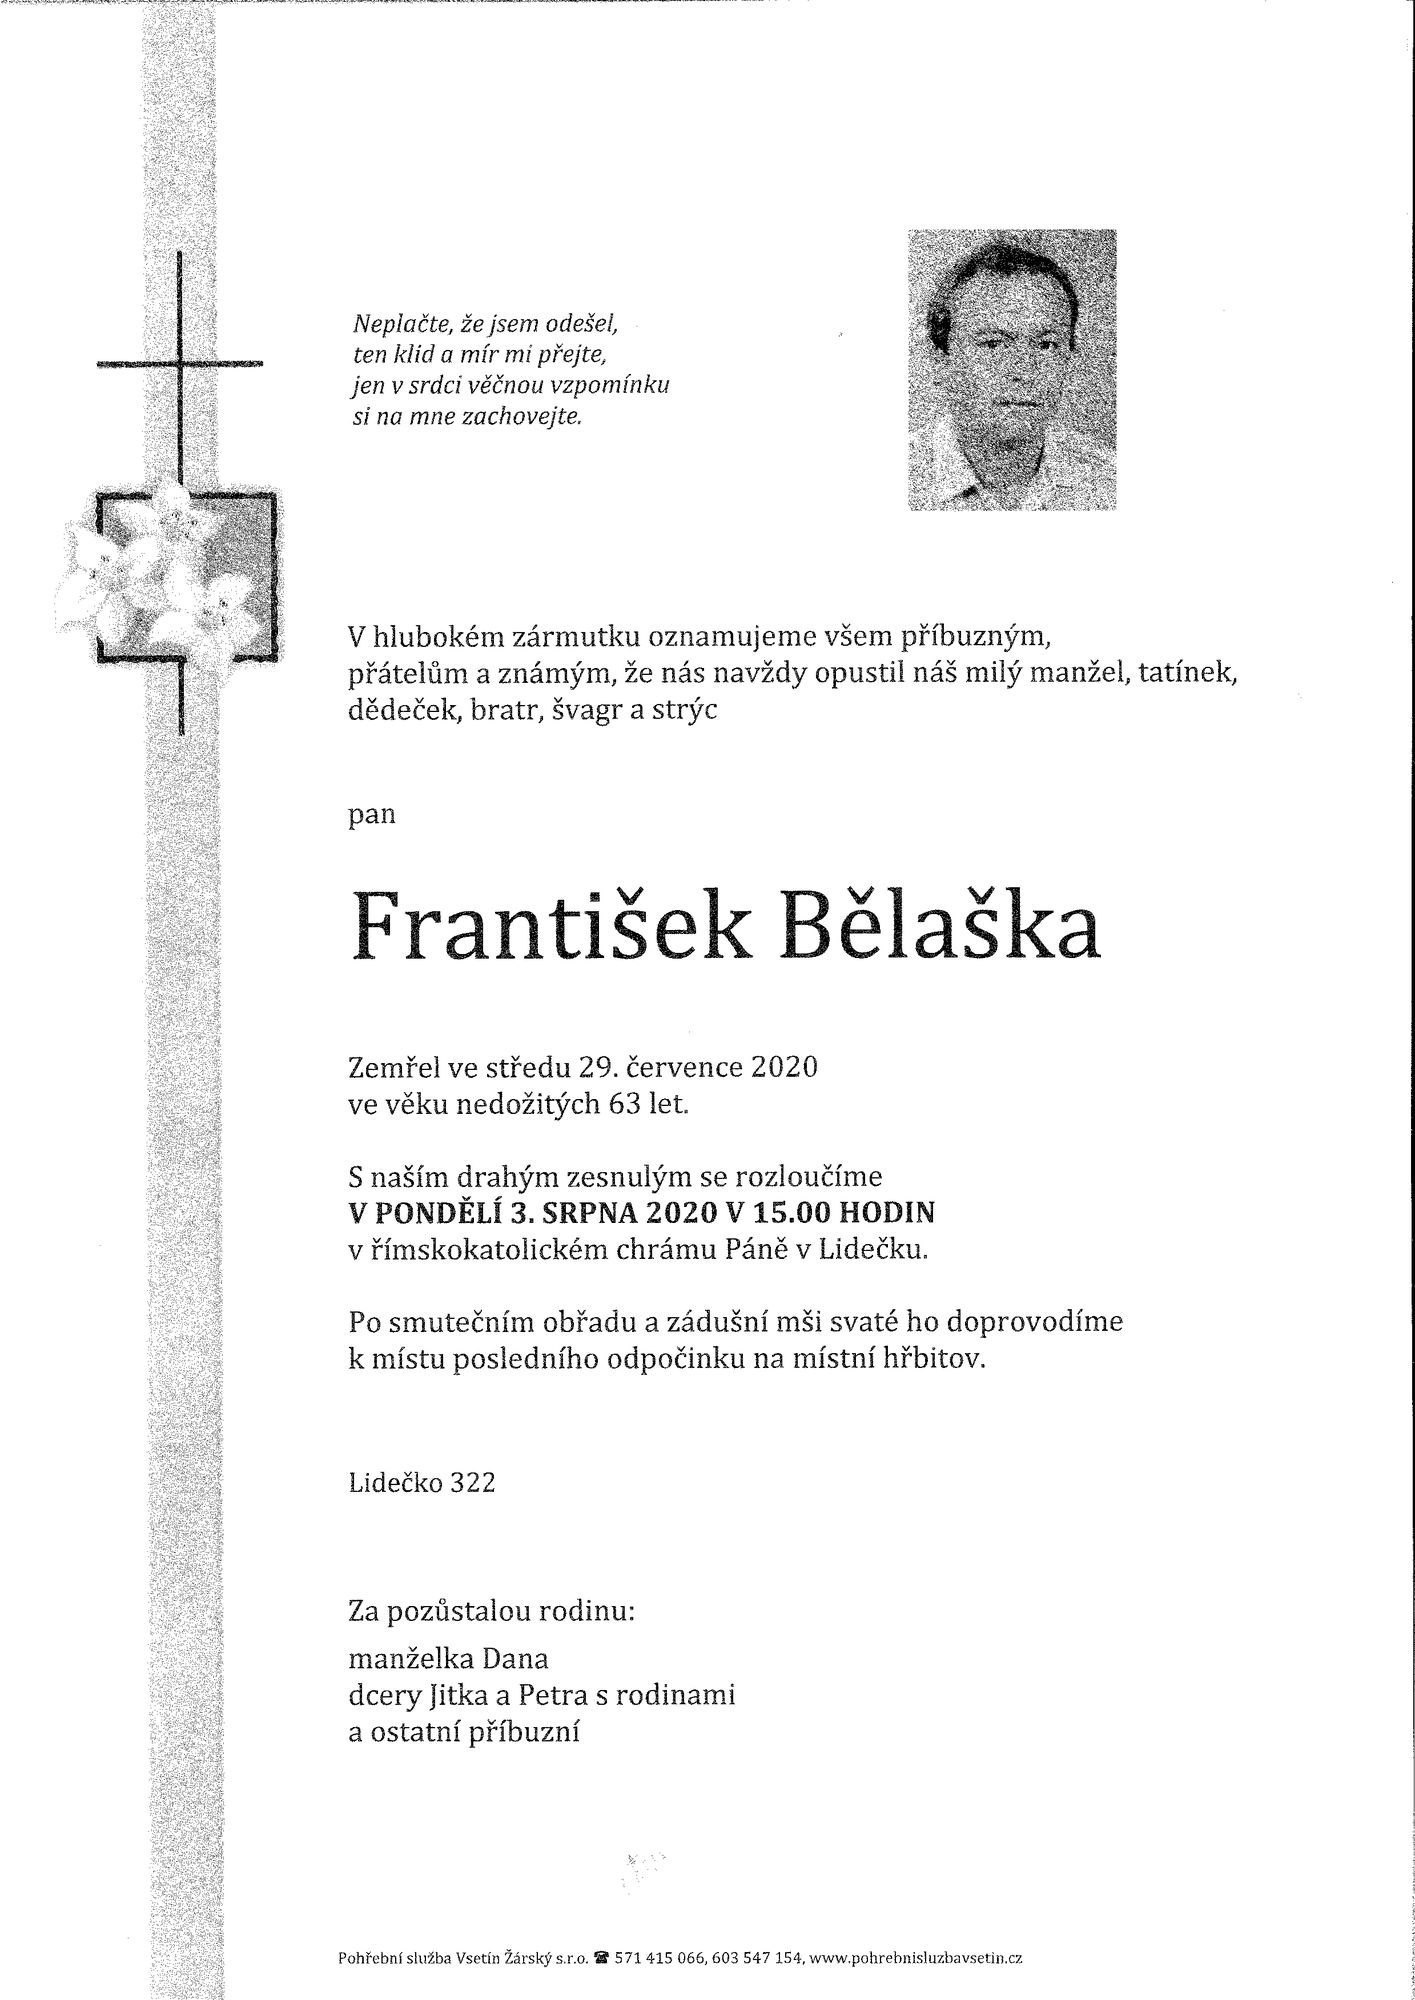 František Bělaška